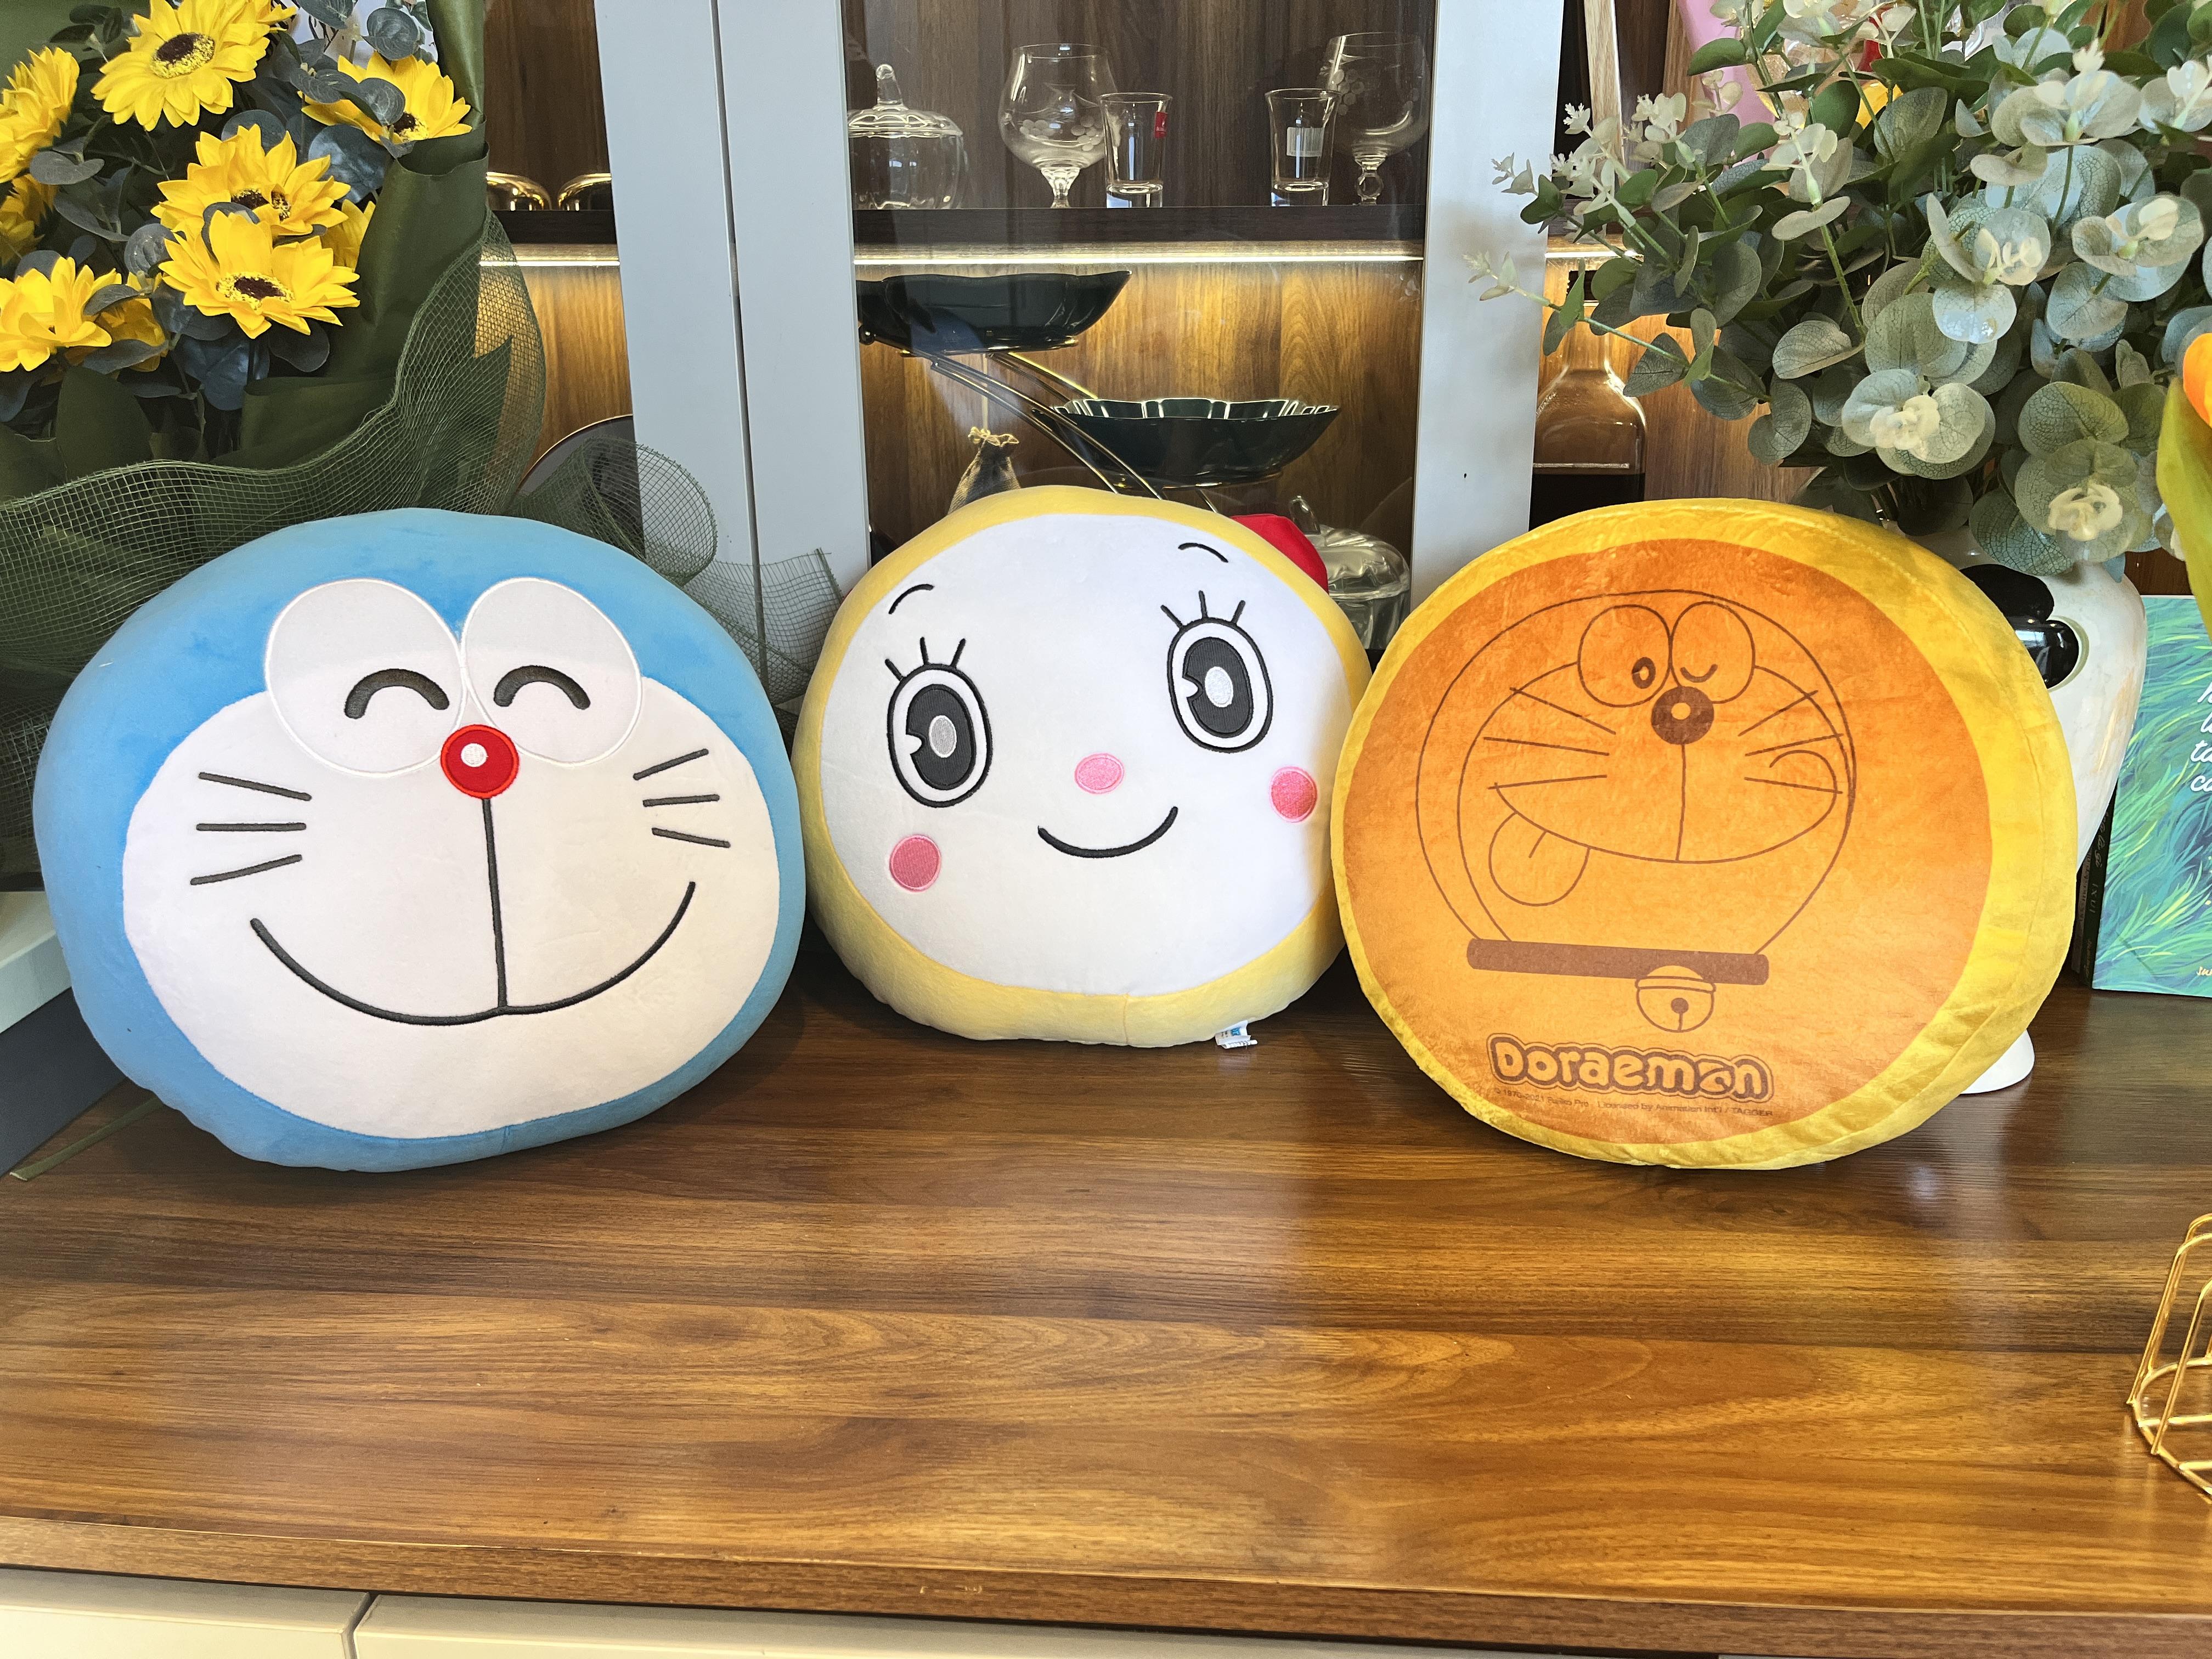 Gối Dorayaki Hình Mặt Doraemon,  Gối ôm Sofa Hình Mặt Doraemon Dễ Thương 33cm, Vải Cao Cấp Mềm Mịn - Sản Phẩm Có Bản Quyền, Phân Phối Bởi Teenbox